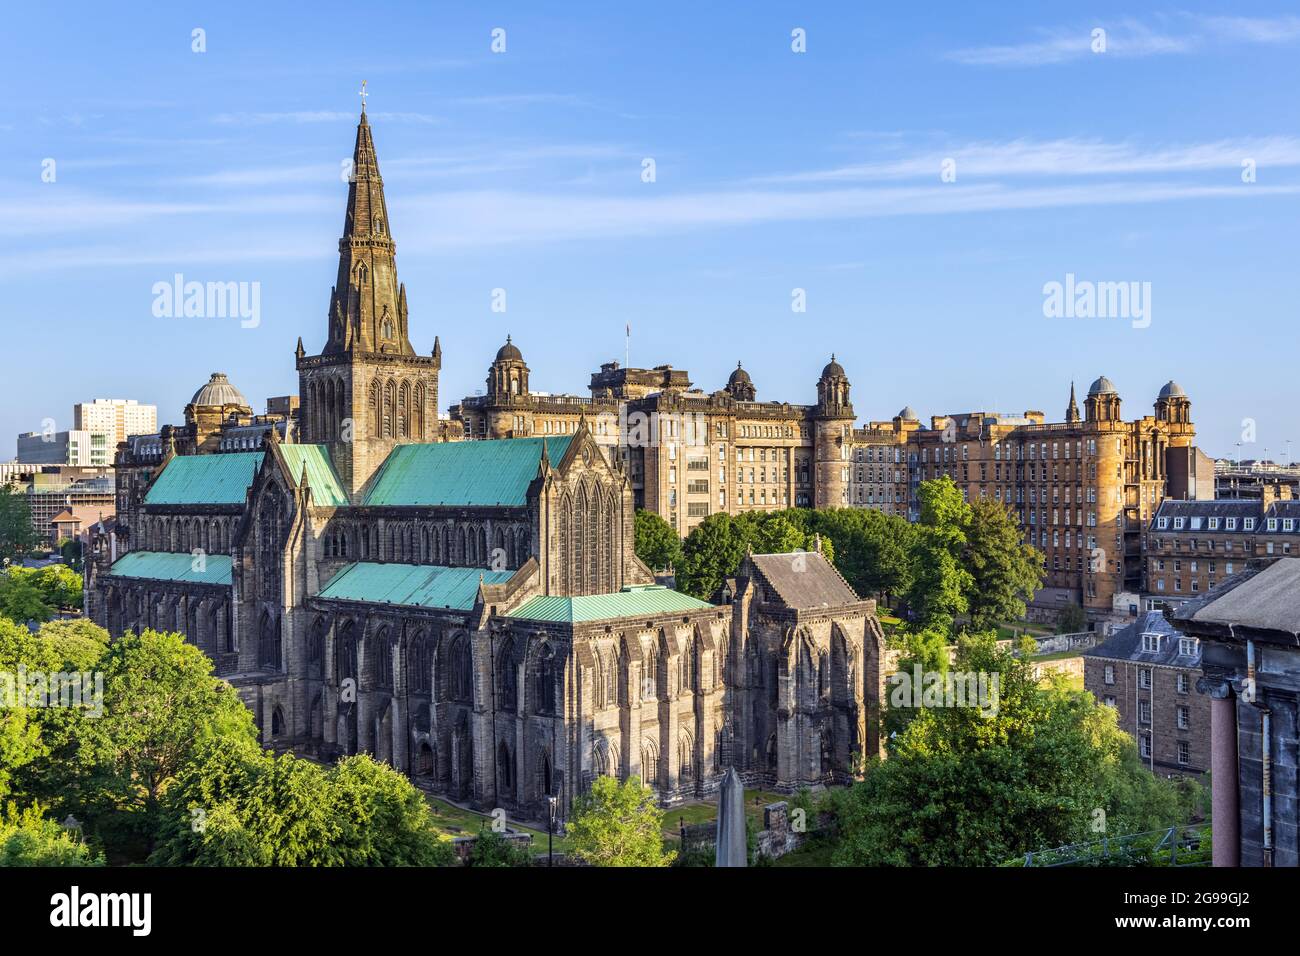 La cathédrale de Glasgow, la plus ancienne cathédrale de l'Écosse continentale, et l'ancienne infirmerie royale, extraite du cimetière victorien de Nacropolis. Banque D'Images